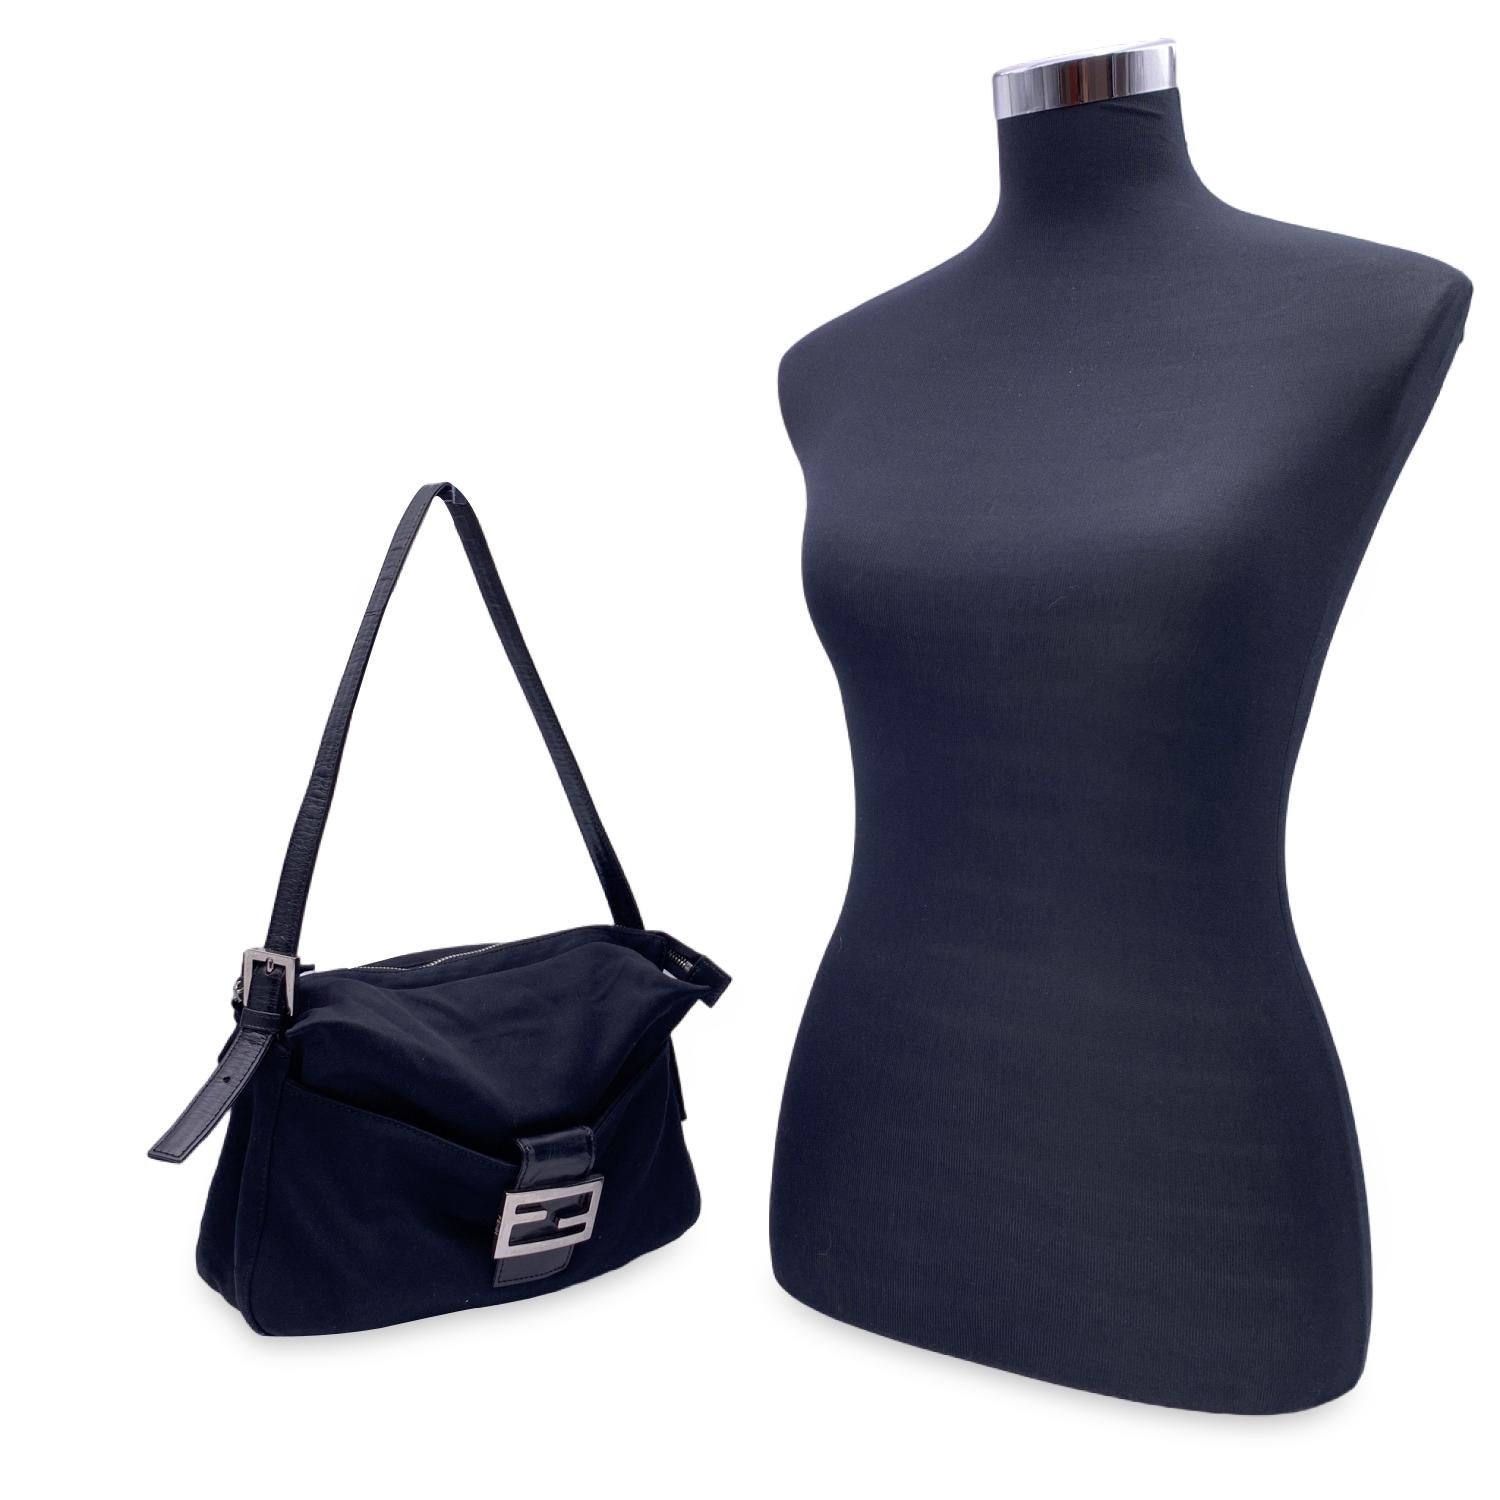 Wunderschöne 'Baguette Bag' von FENDI aus schwarzem Stoff mit Vordertasche. Fronttasche mit FF-Hardware-Schnappverschluss. Oberer Reißverschluss. Innentasche mit Reißverschluss. Verstellbarer Ledergriff oben. Diese täuschend kleine Tasche mit ihrem